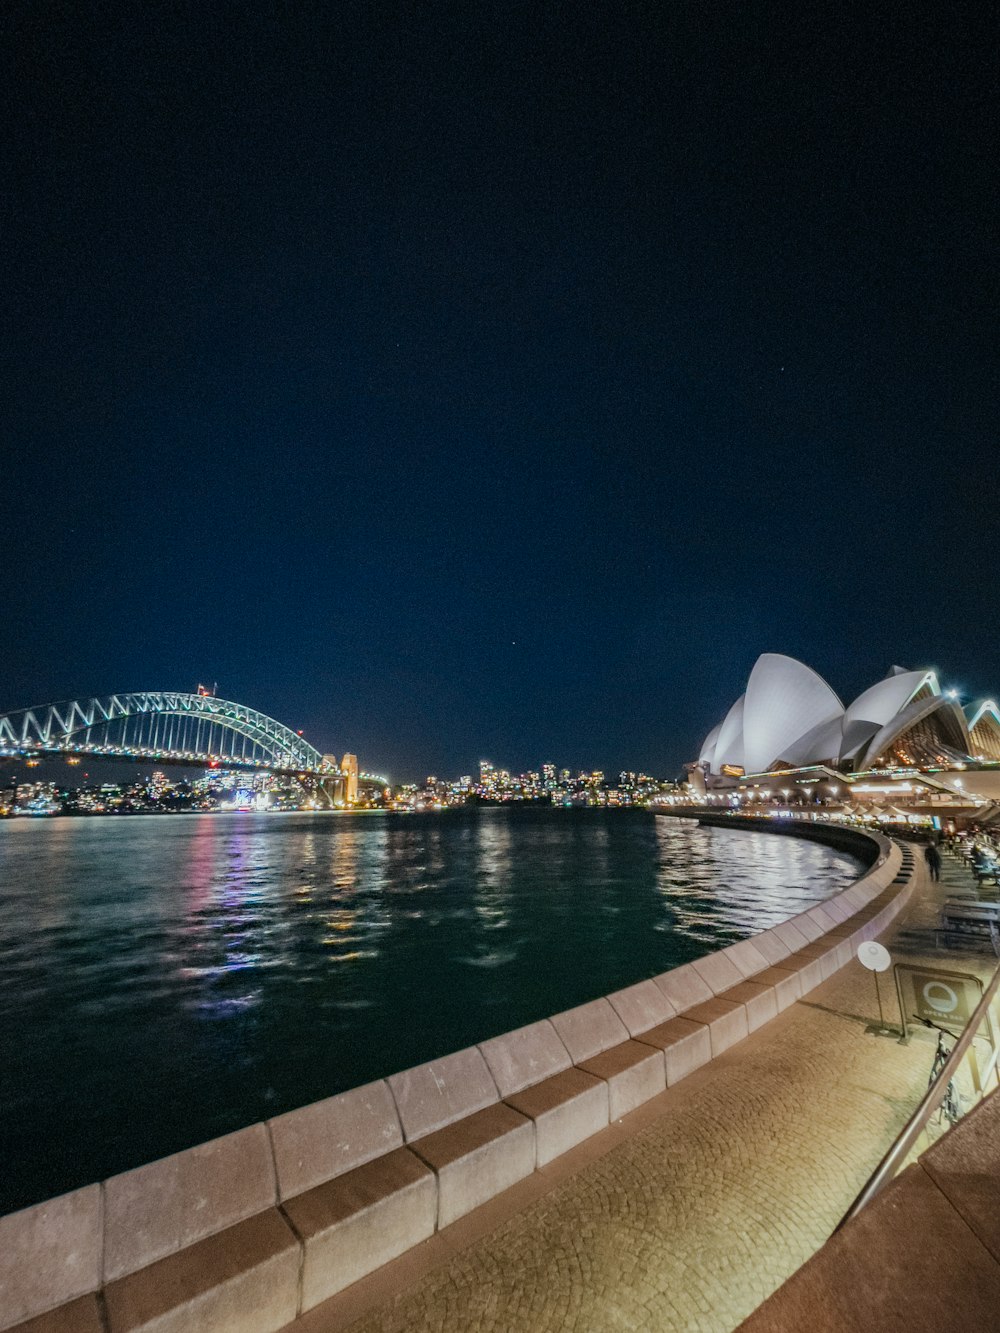 Una vista dell'Opera di Sydney e del Sydney Bridge di notte